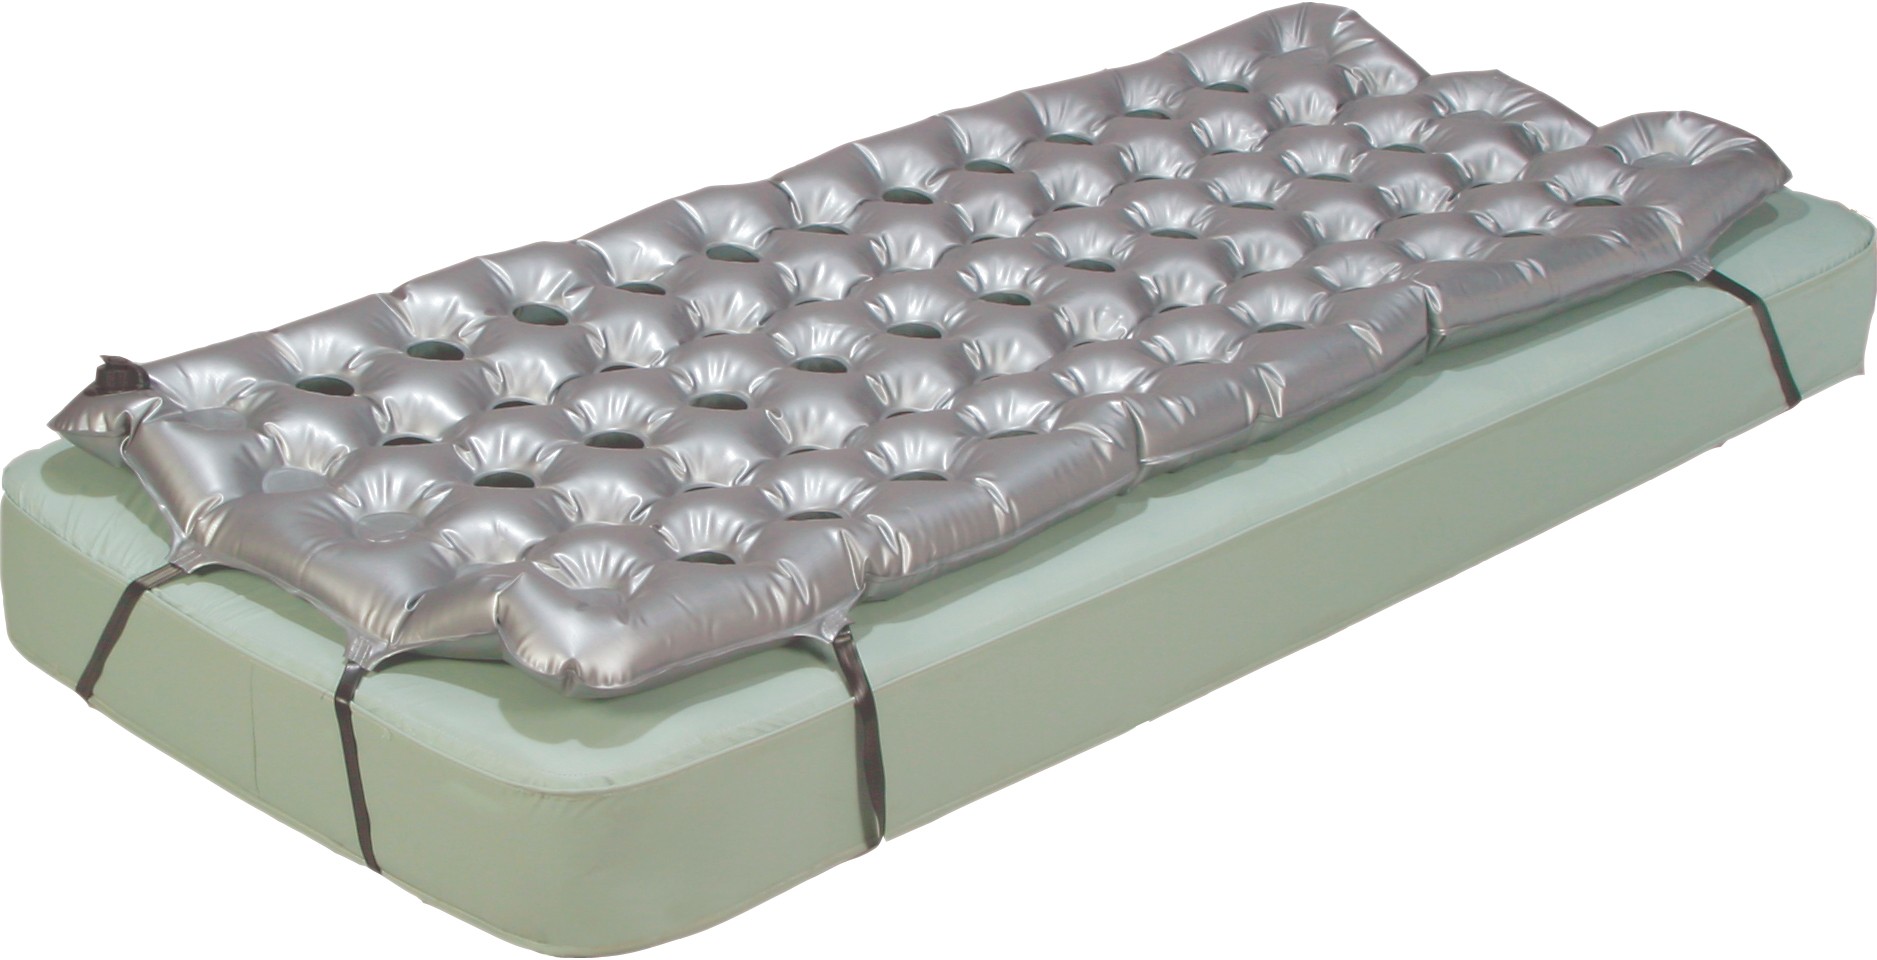 heat up air mattress